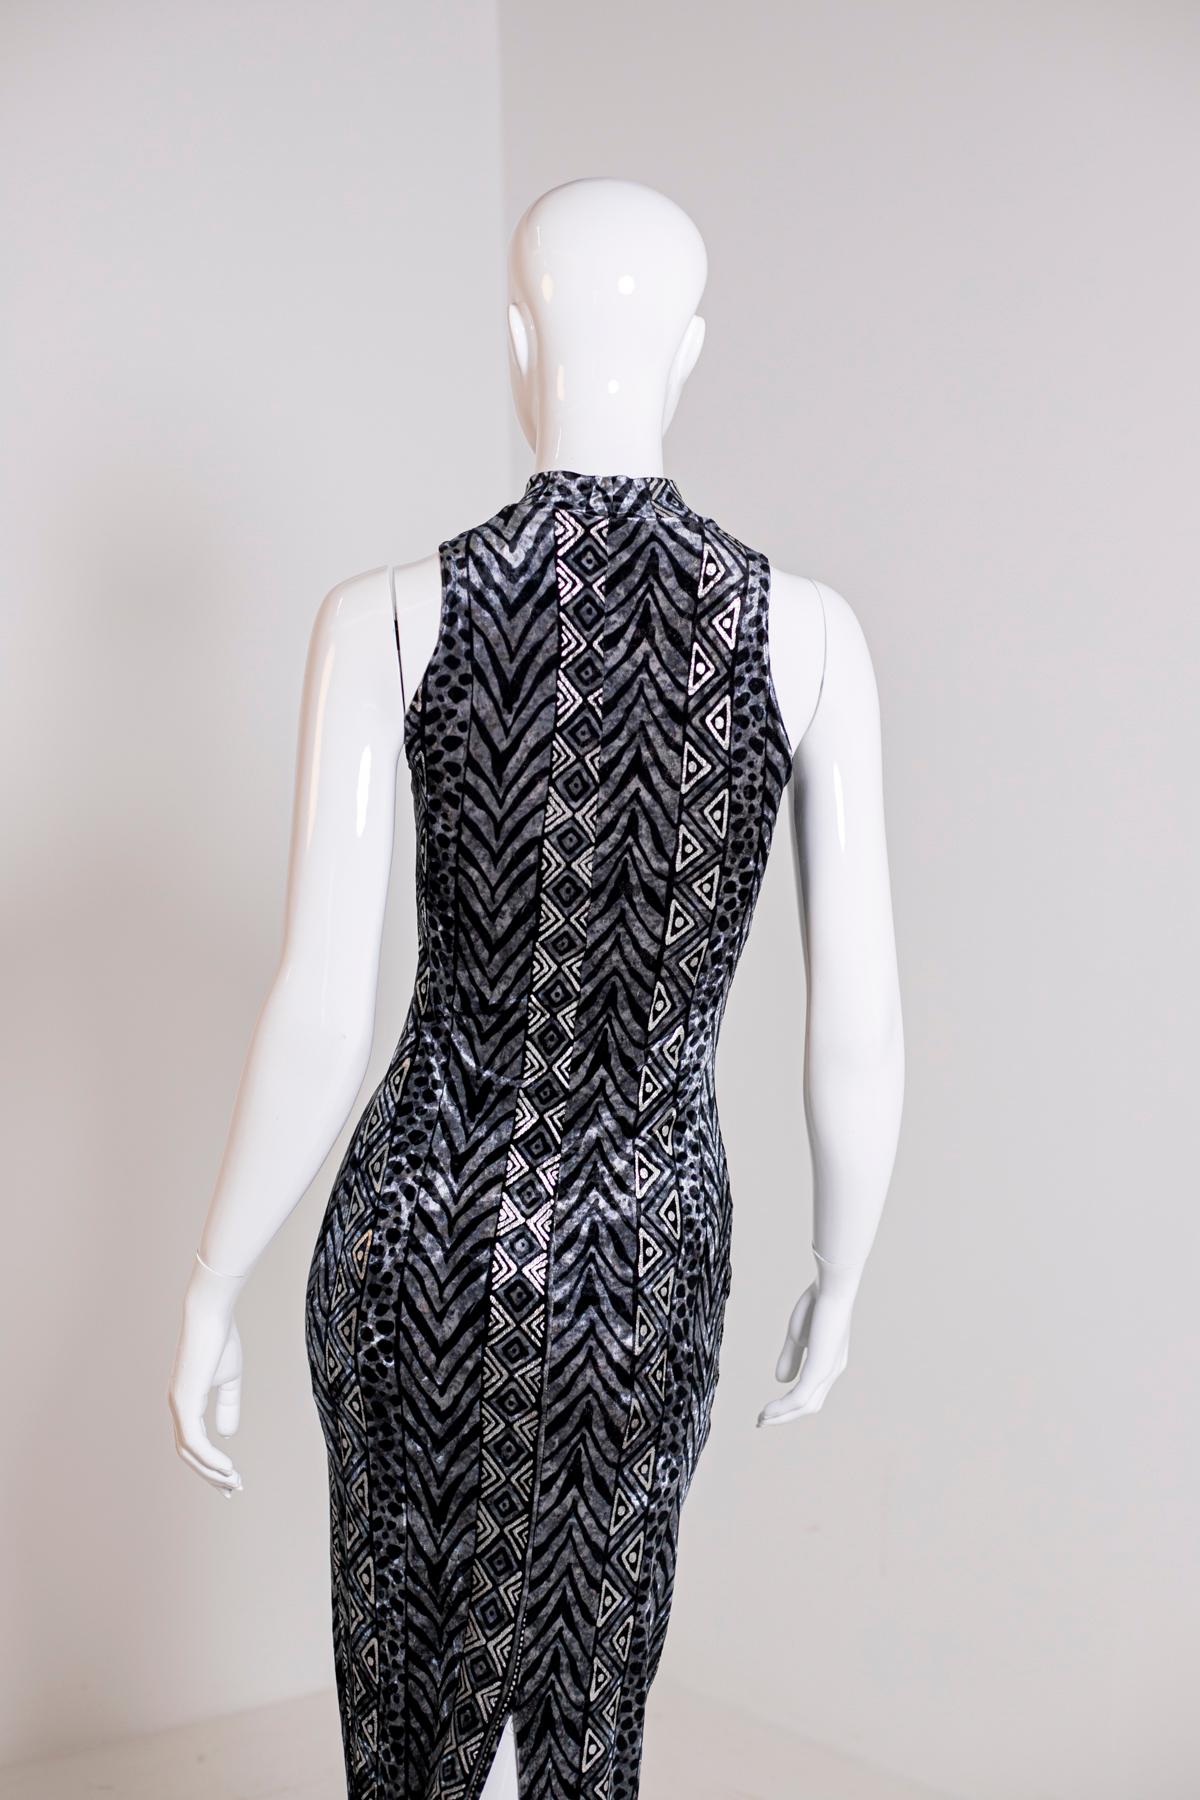 Faust Glittery Black Elegant Dress For Sale 3